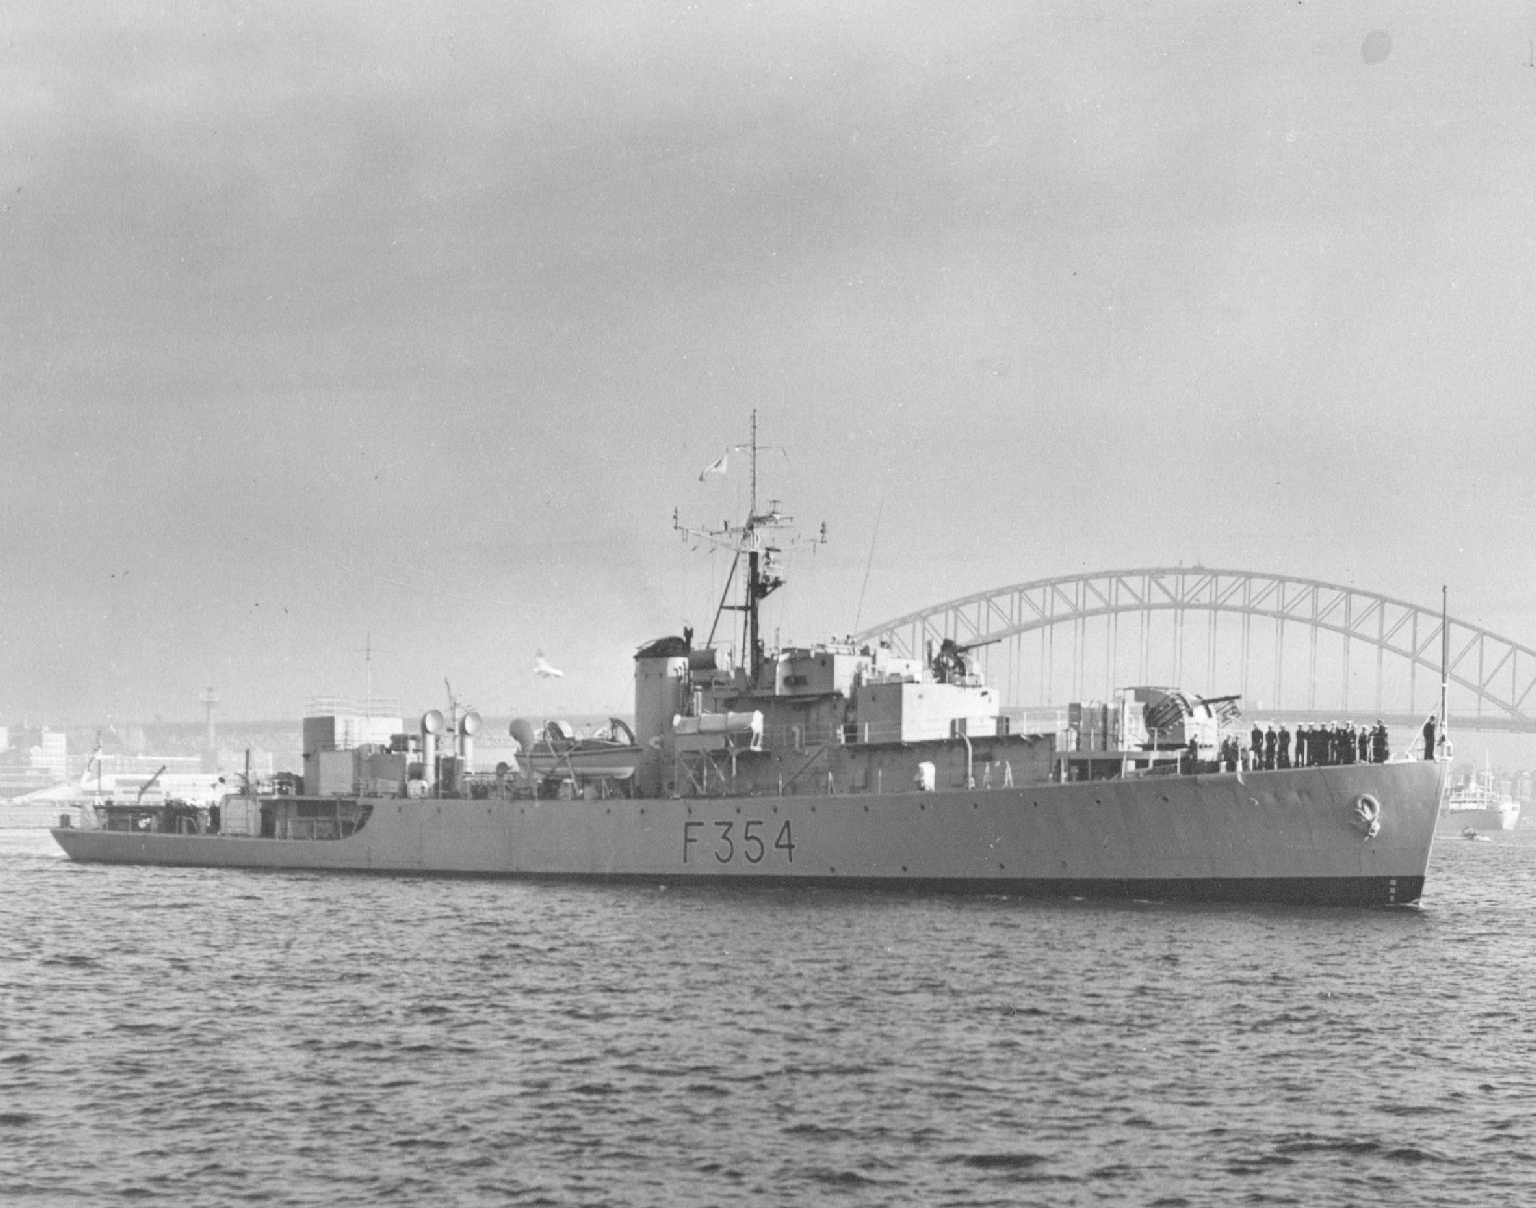 Australian River Class Frigate. This image shows vessel near Sydney Harbour Bridge